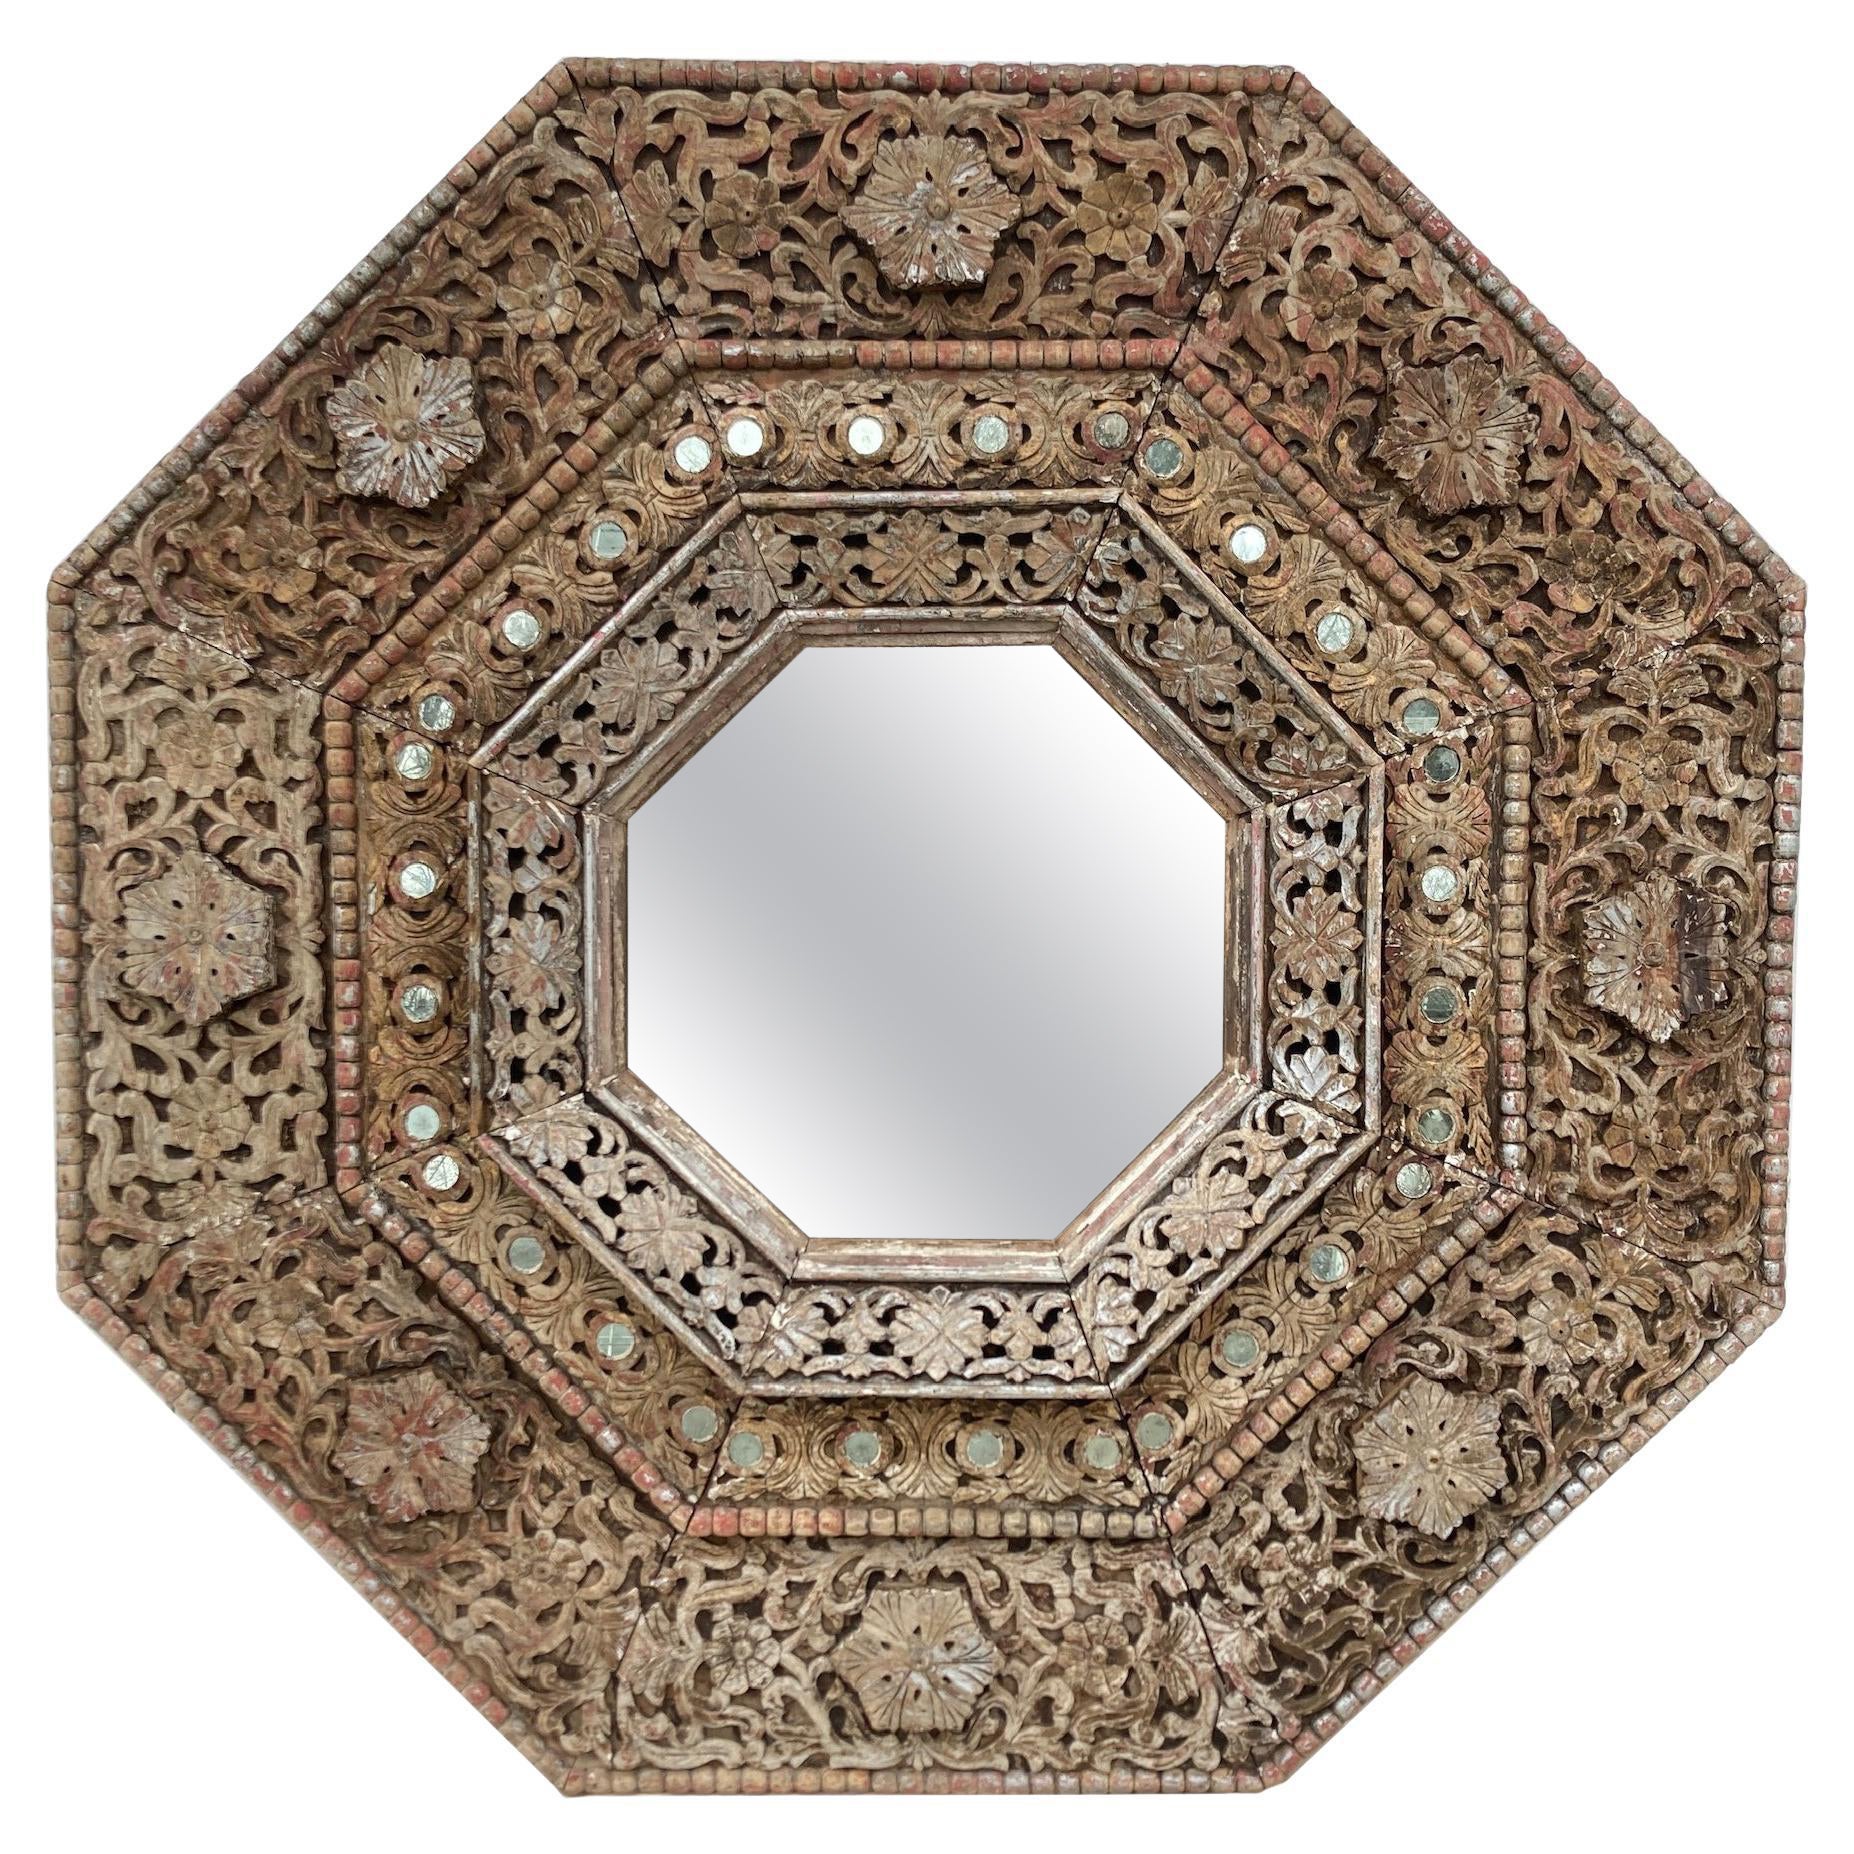 Monumental miroir octogonal indien sculpté des années 1950